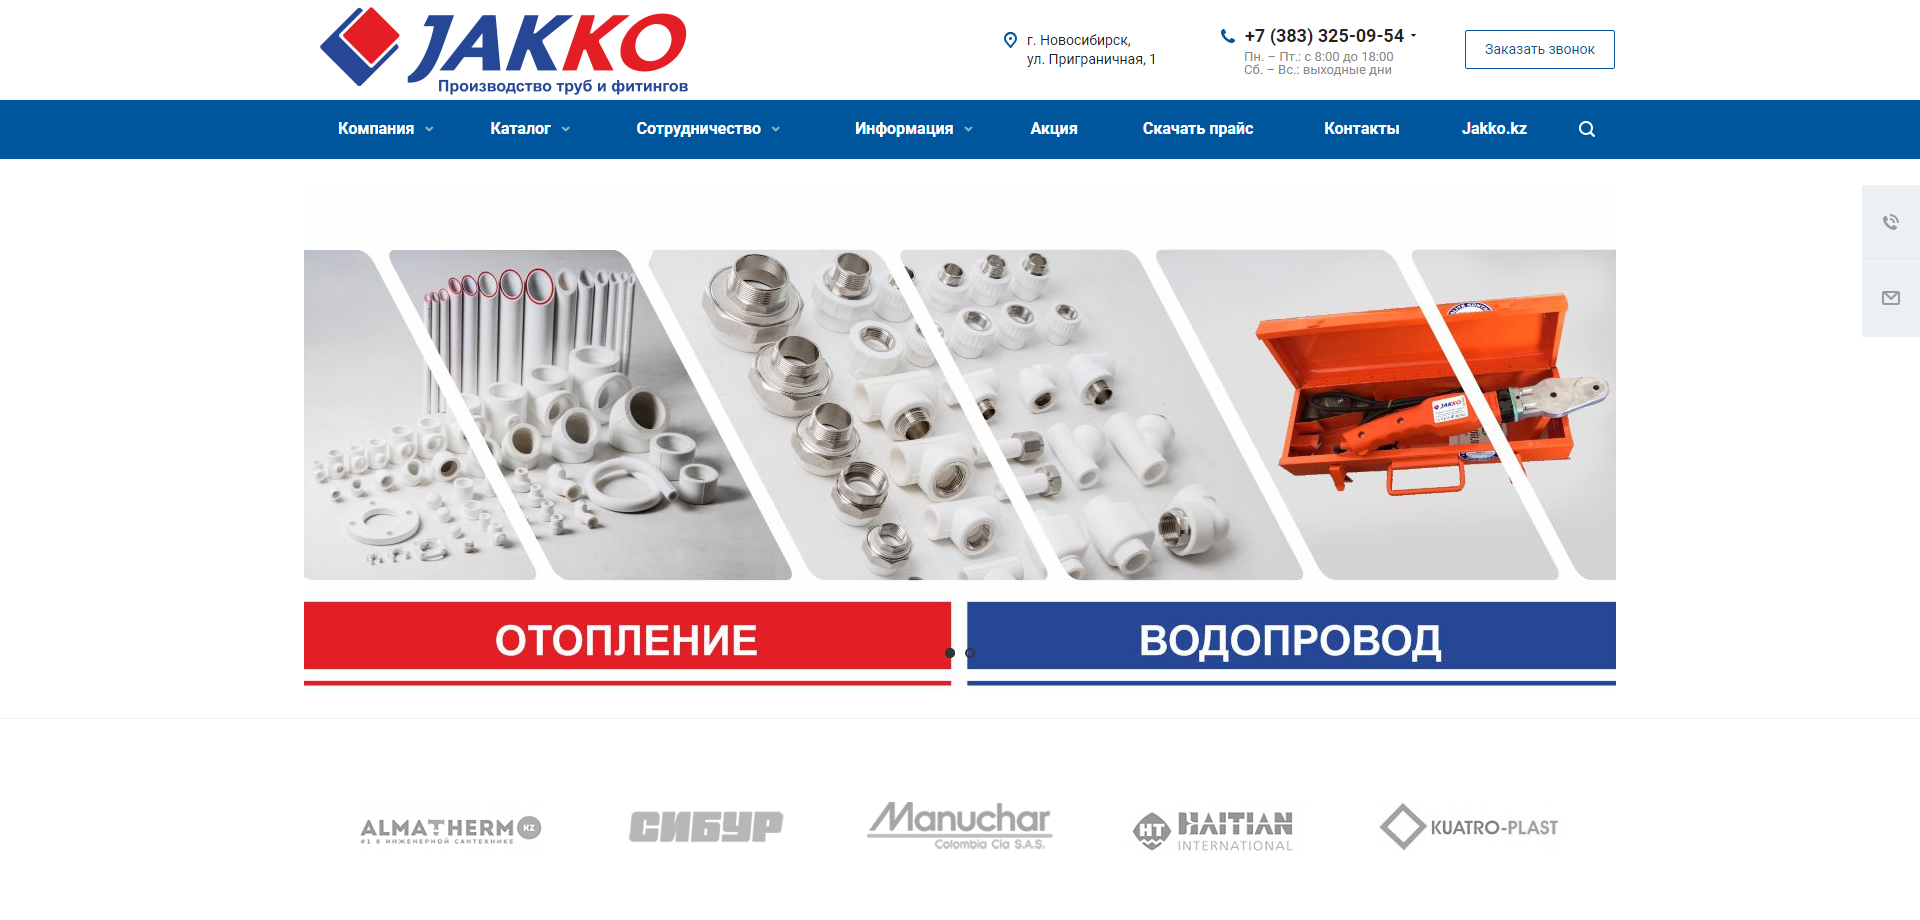 интернет-магазин производителя пластиковых труб и фитингов  jakko.ru